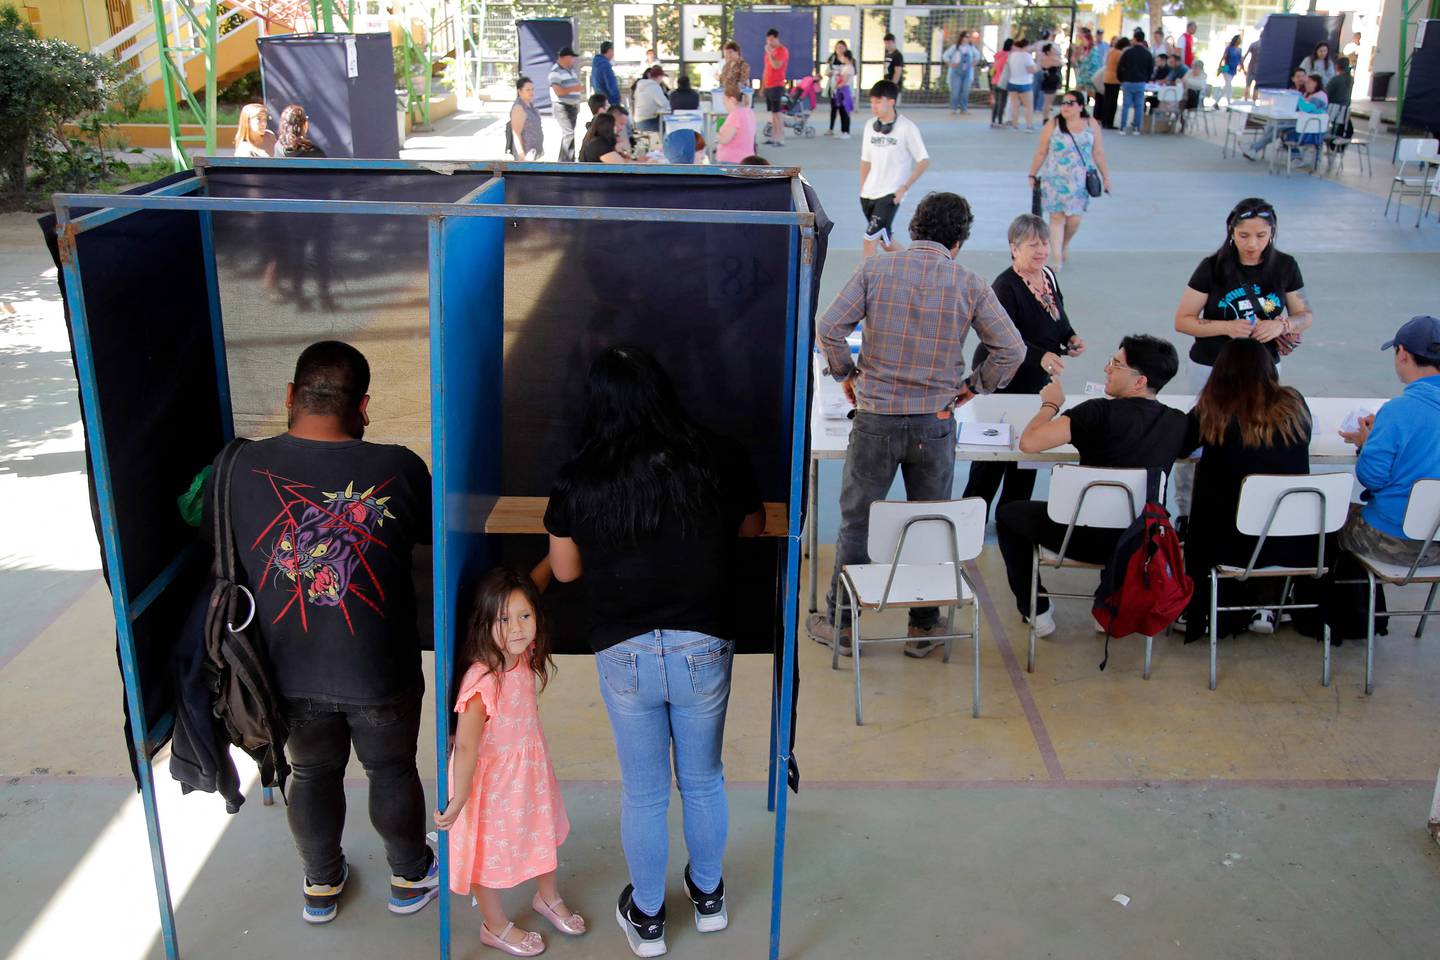 Los chilenos votan en un segundo referéndum destinado a reemplazar la constitución de la época de la dictadura del país, y los analistas dicen que la nueva propuesta es incluso más conservadora que la carta existente.